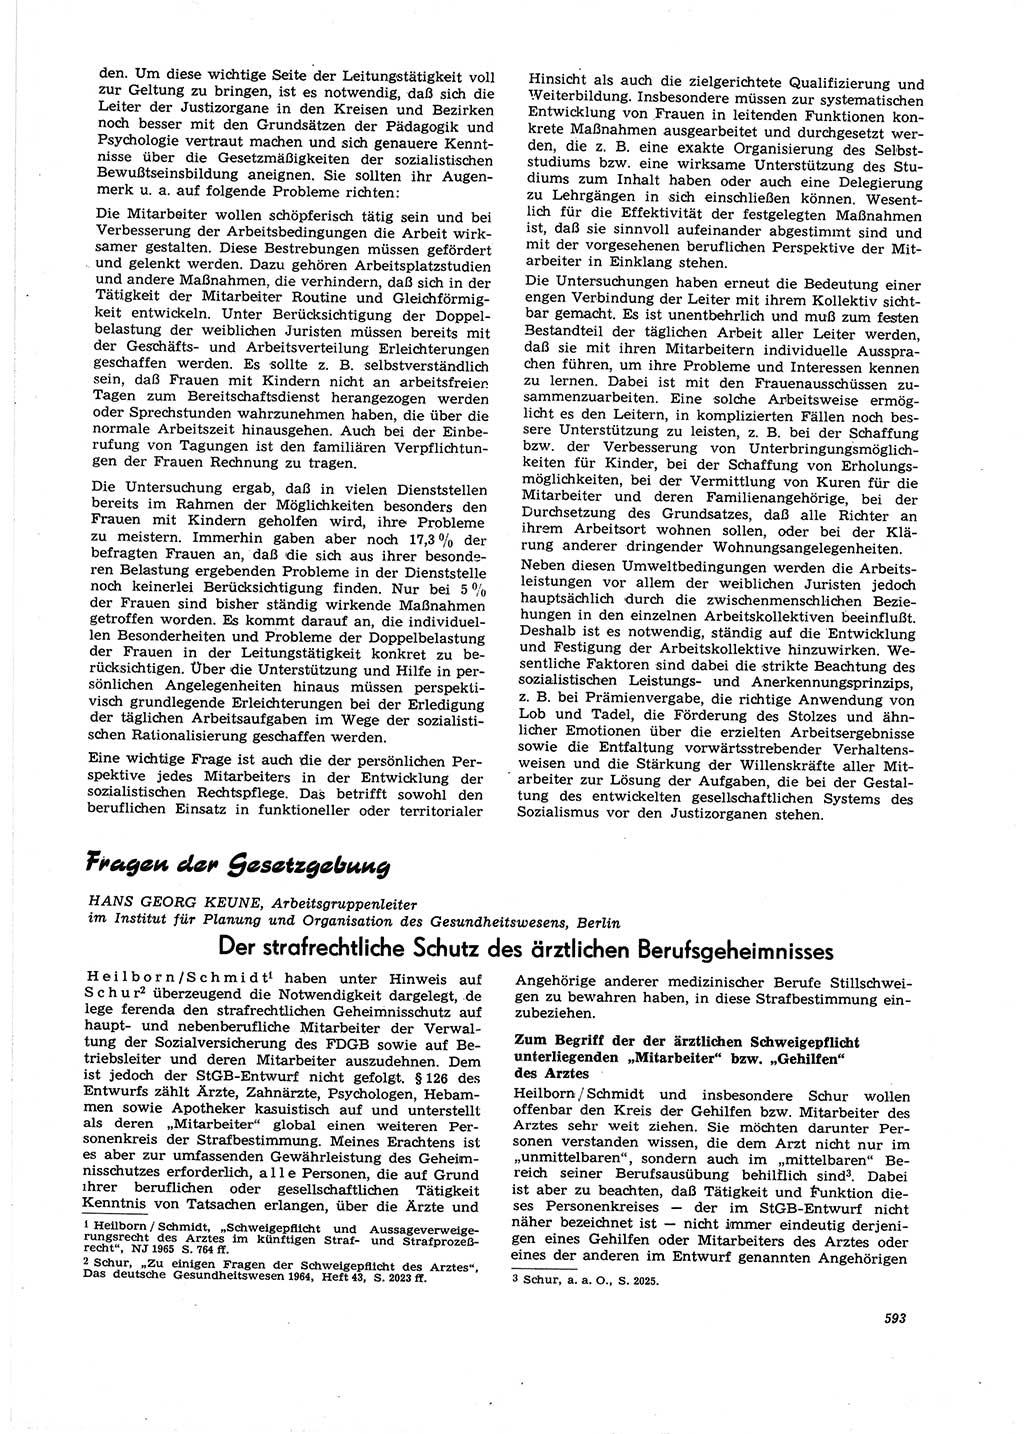 Neue Justiz (NJ), Zeitschrift für Recht und Rechtswissenschaft [Deutsche Demokratische Republik (DDR)], 21. Jahrgang 1967, Seite 593 (NJ DDR 1967, S. 593)